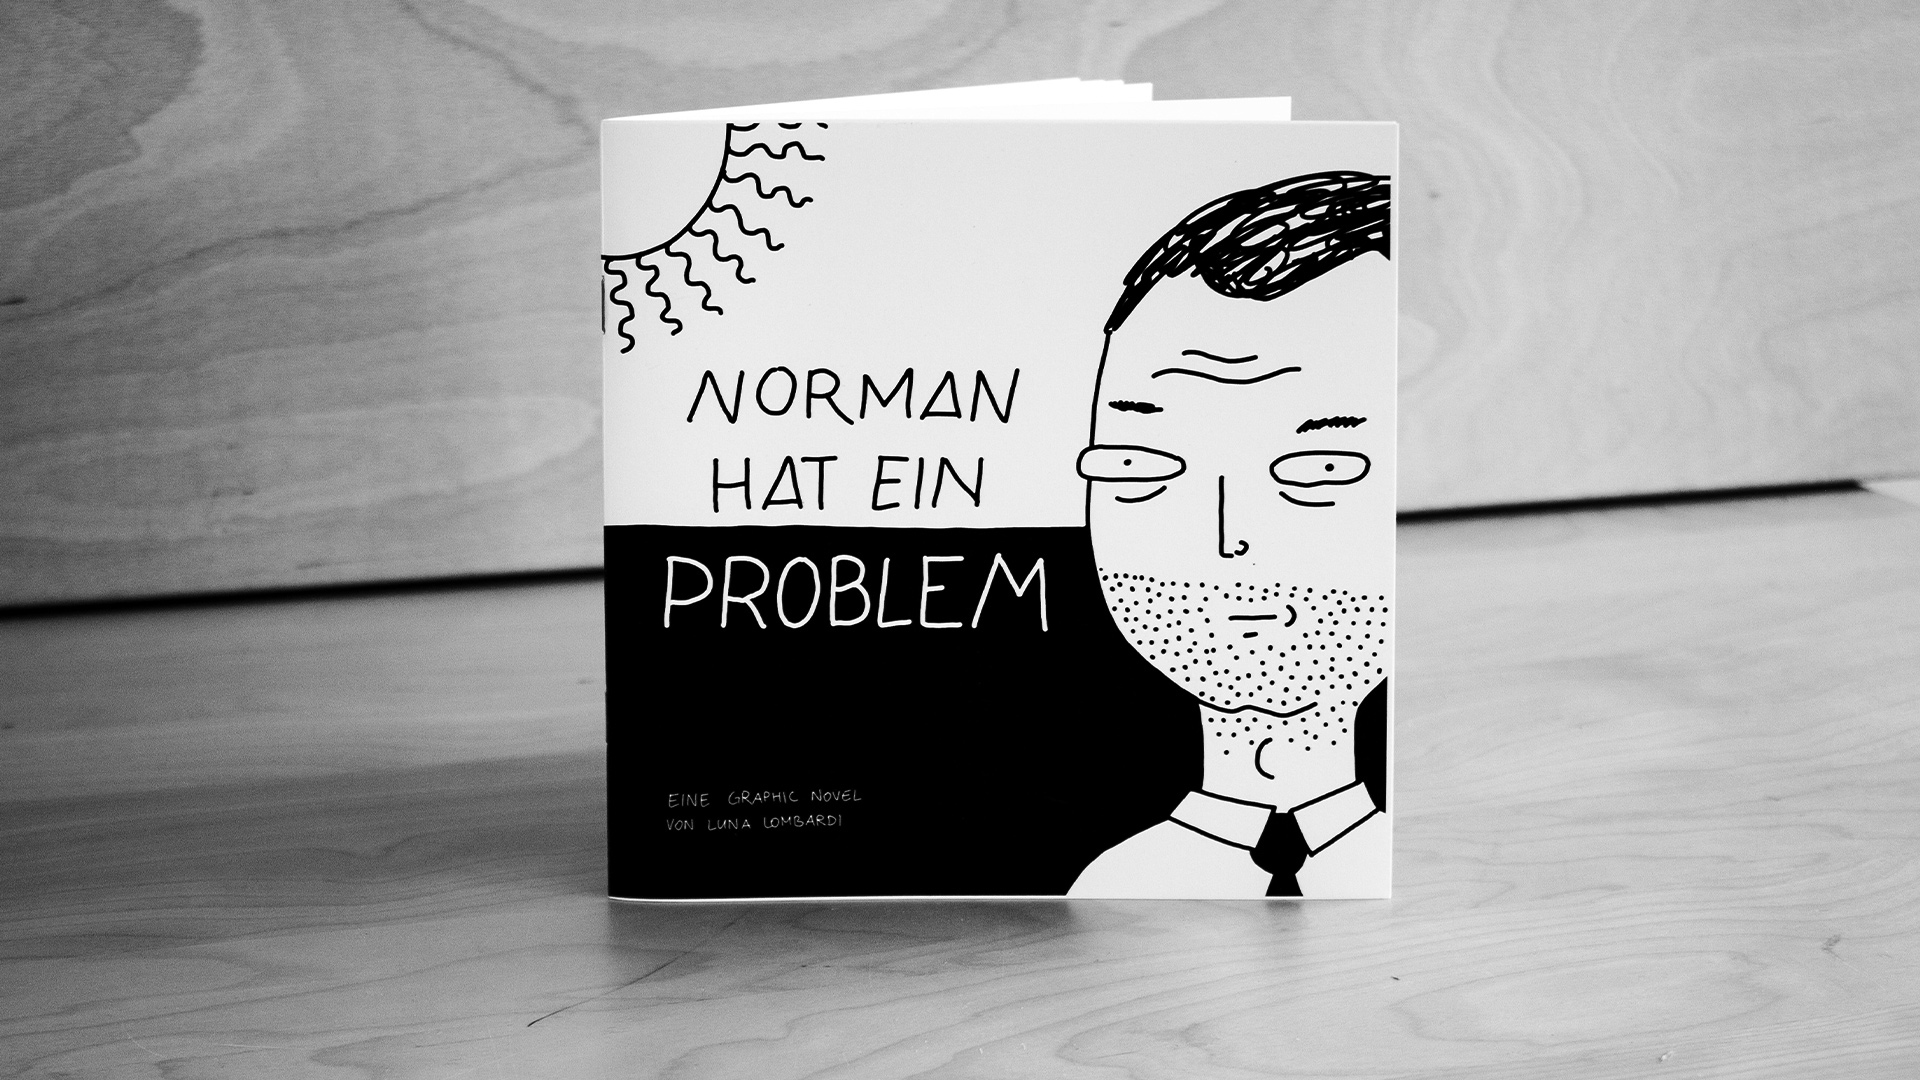 NORMAN HAT EIN PROBLEM – Eine Graphic Novel über Luxusproblem